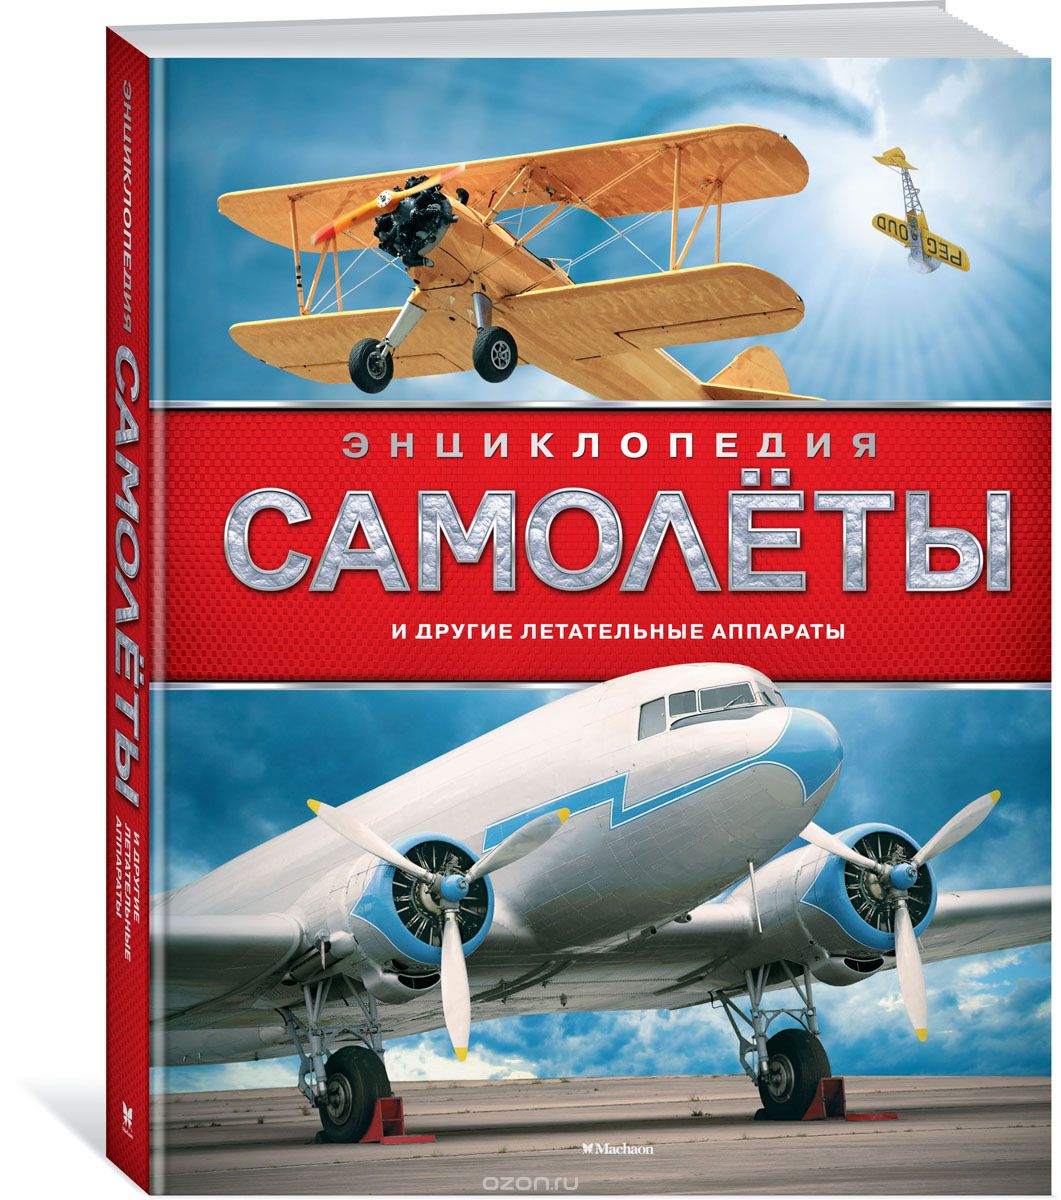 Скачать книгу "Самолёты и другие летательные аппараты, Хансен У."